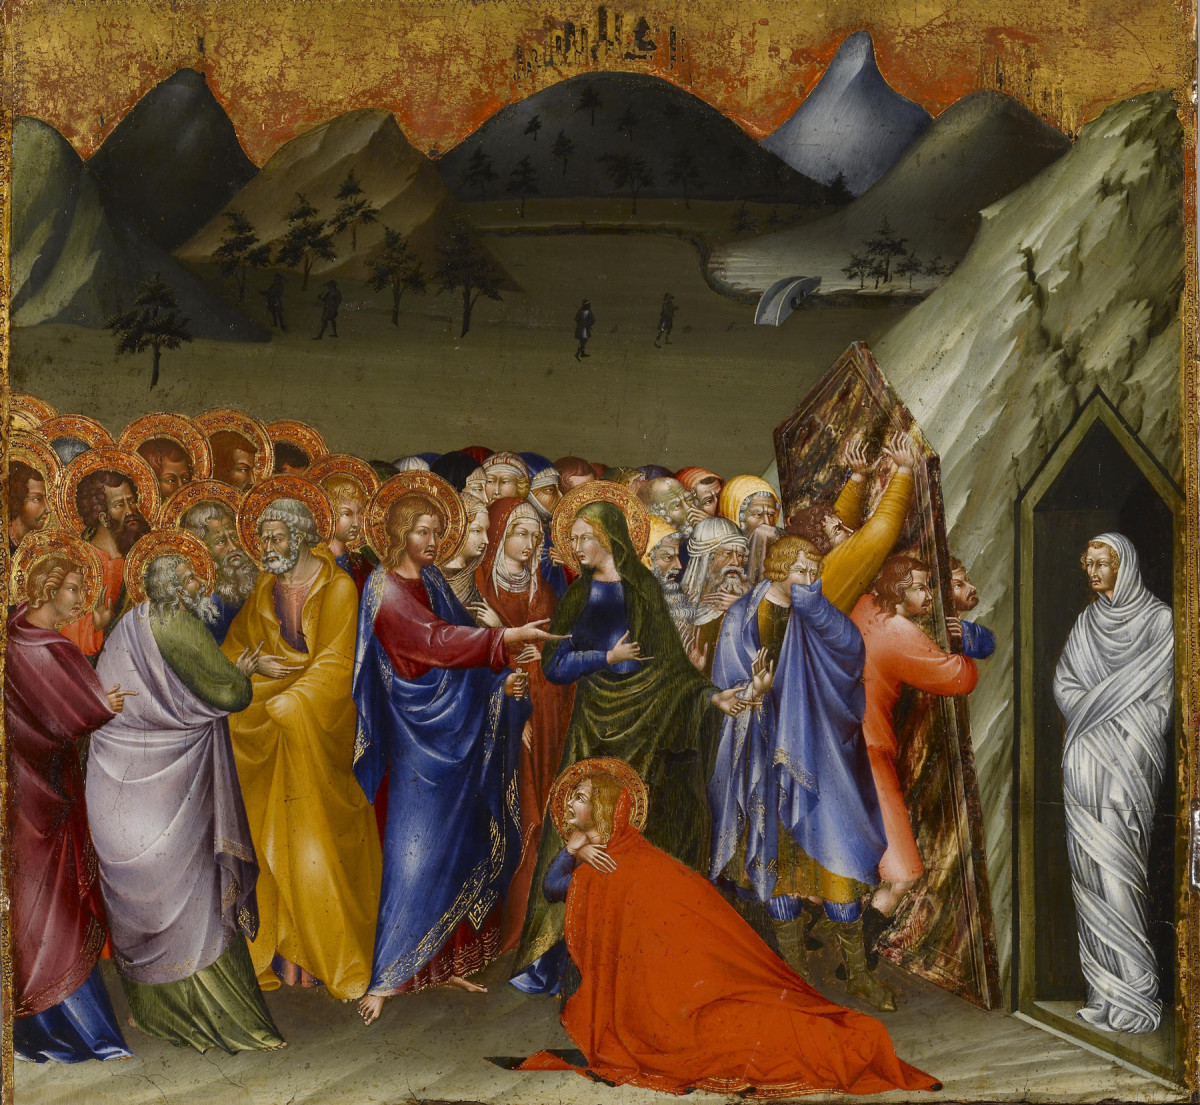 The Resurrection of Lazarus by Giovanni di Paolo